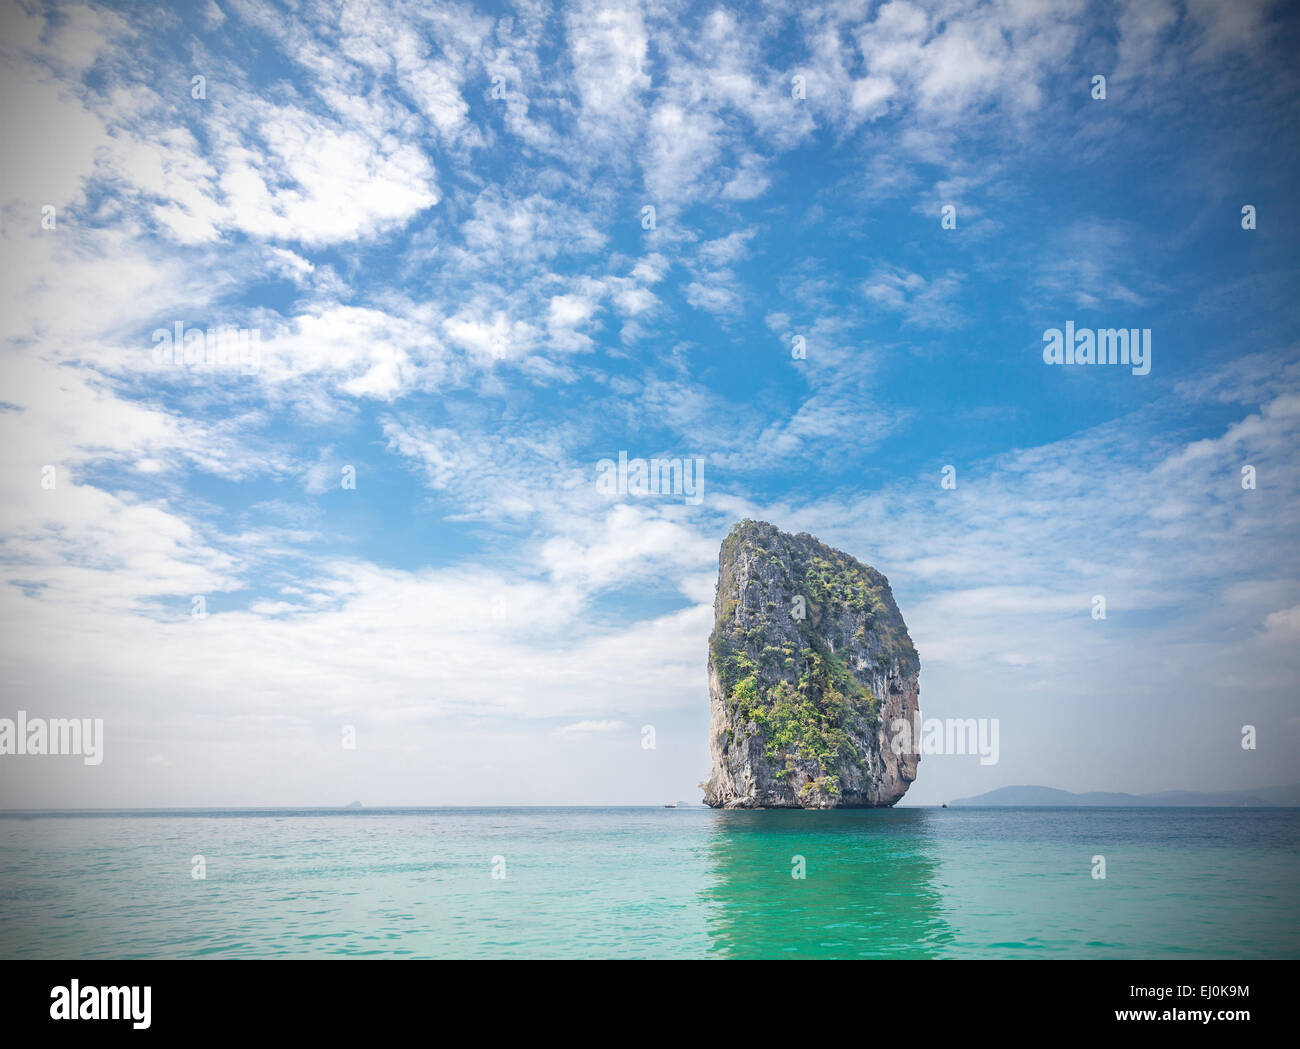 Tropische Insel in der Provinz Krabi, Thailand. Vignette-Effekt angewendet. Stockfoto